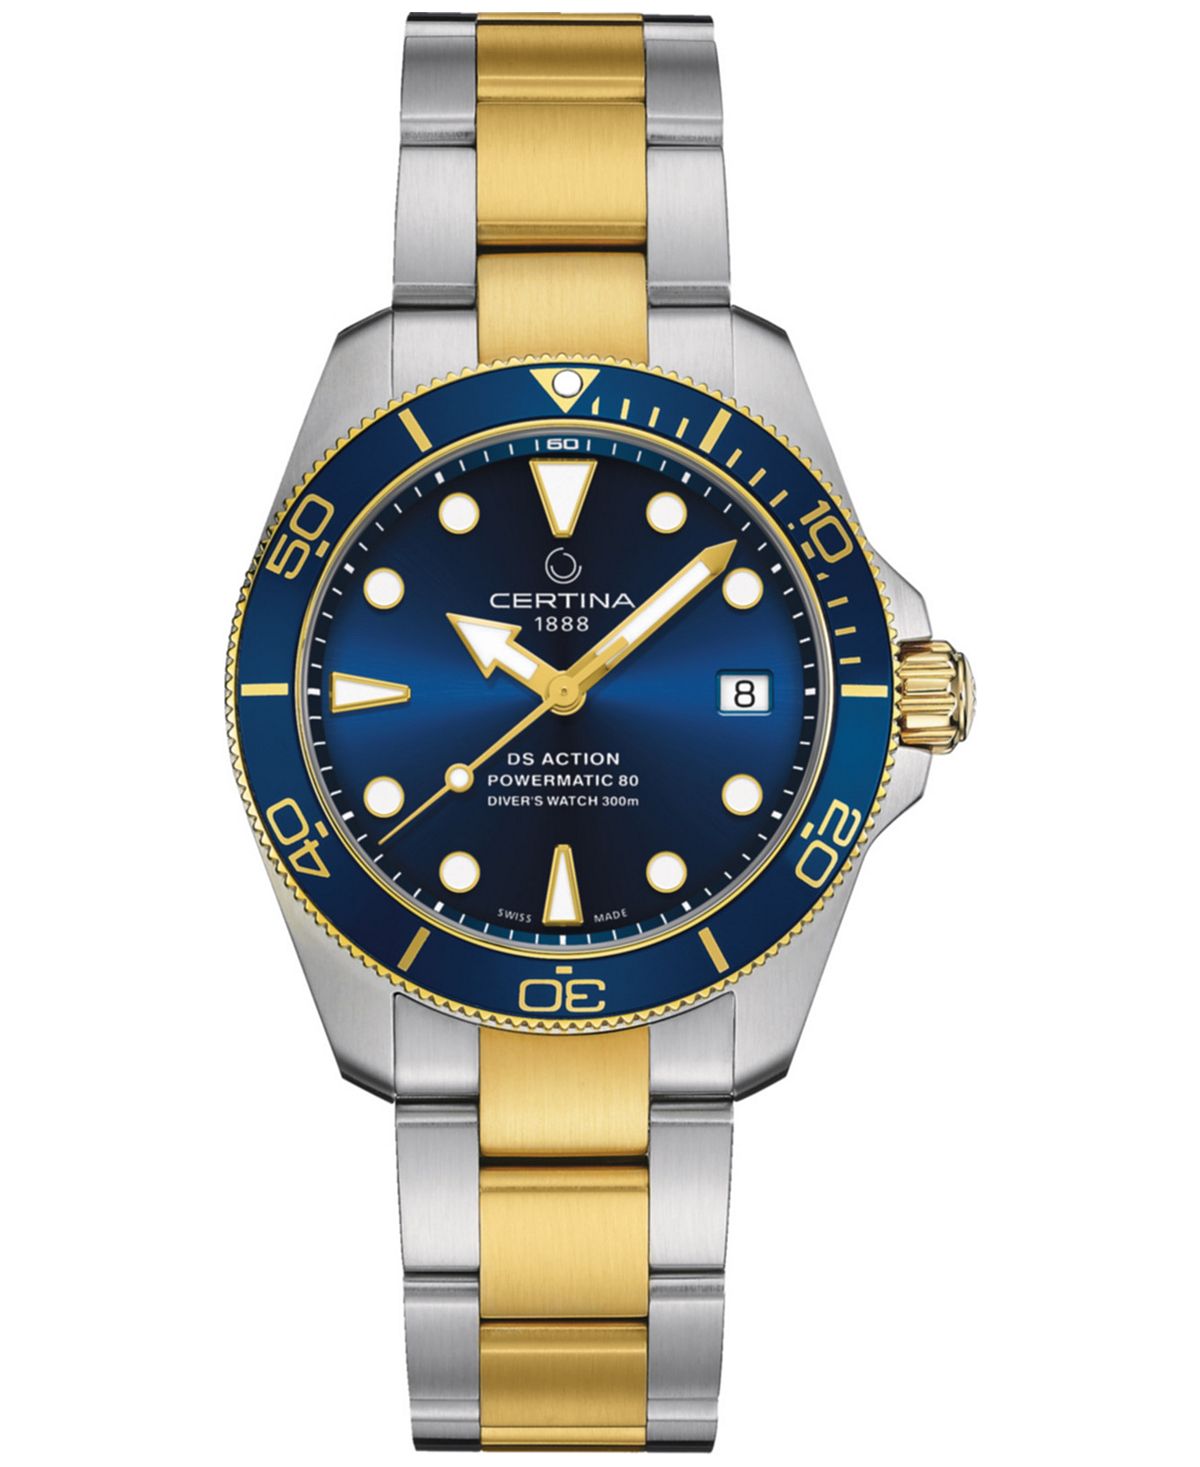 Унисекс Швейцарские автоматические часы DS Action Diver с двухцветным браслетом из нержавеющей стали, 38 мм Certina, синий certina c610019310